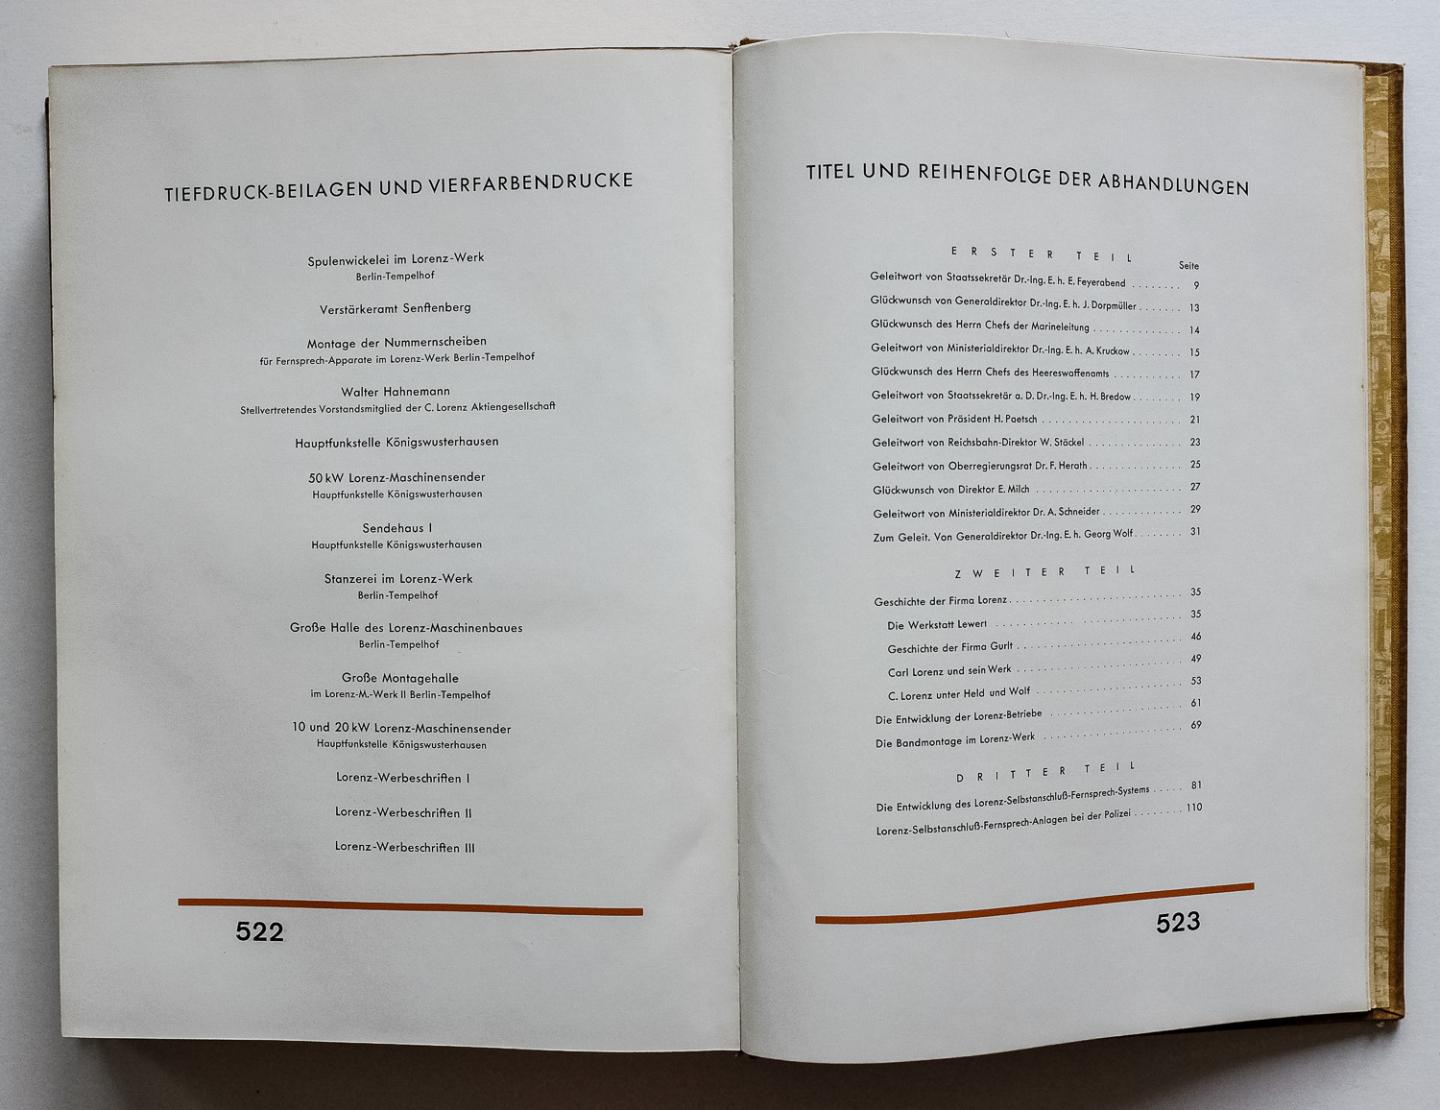 Hahnemann, Walter Max en Hans August Steudel - 50 Jahre Lorenz, 1880-1930 - Festschrift der C. Lorenz Aktiengesellschaft, Berlin-Tempelhof.